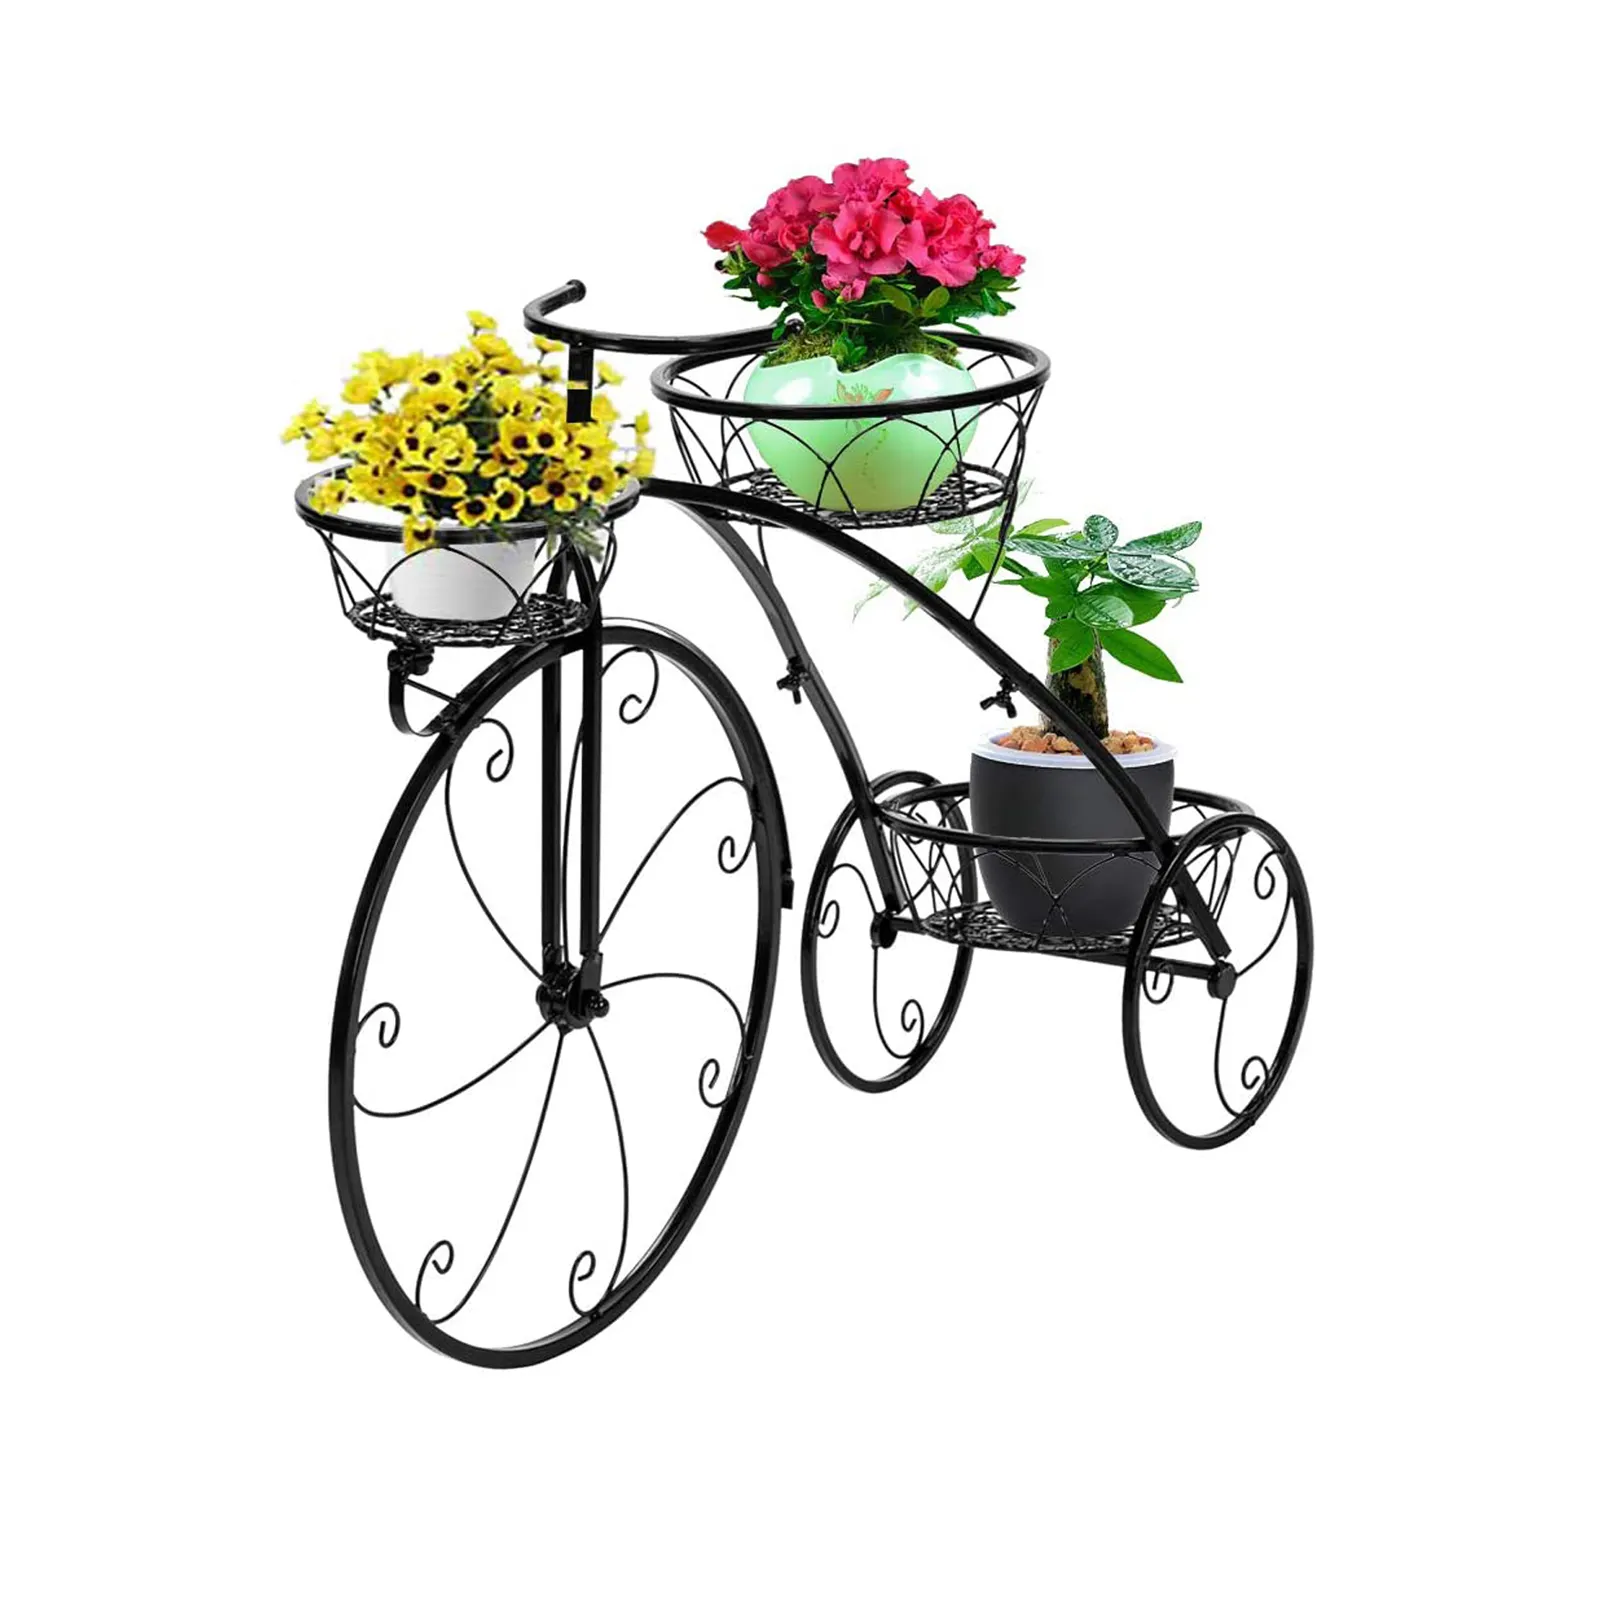 Tricycle संयंत्र खड़े हो जाओ, फूल संयंत्र खड़े हो जाओ, फूल बर्तन गाड़ी धारक आँगन स्टैंड धारक आउटडोर प्रदर्शित करने पौधे फूल